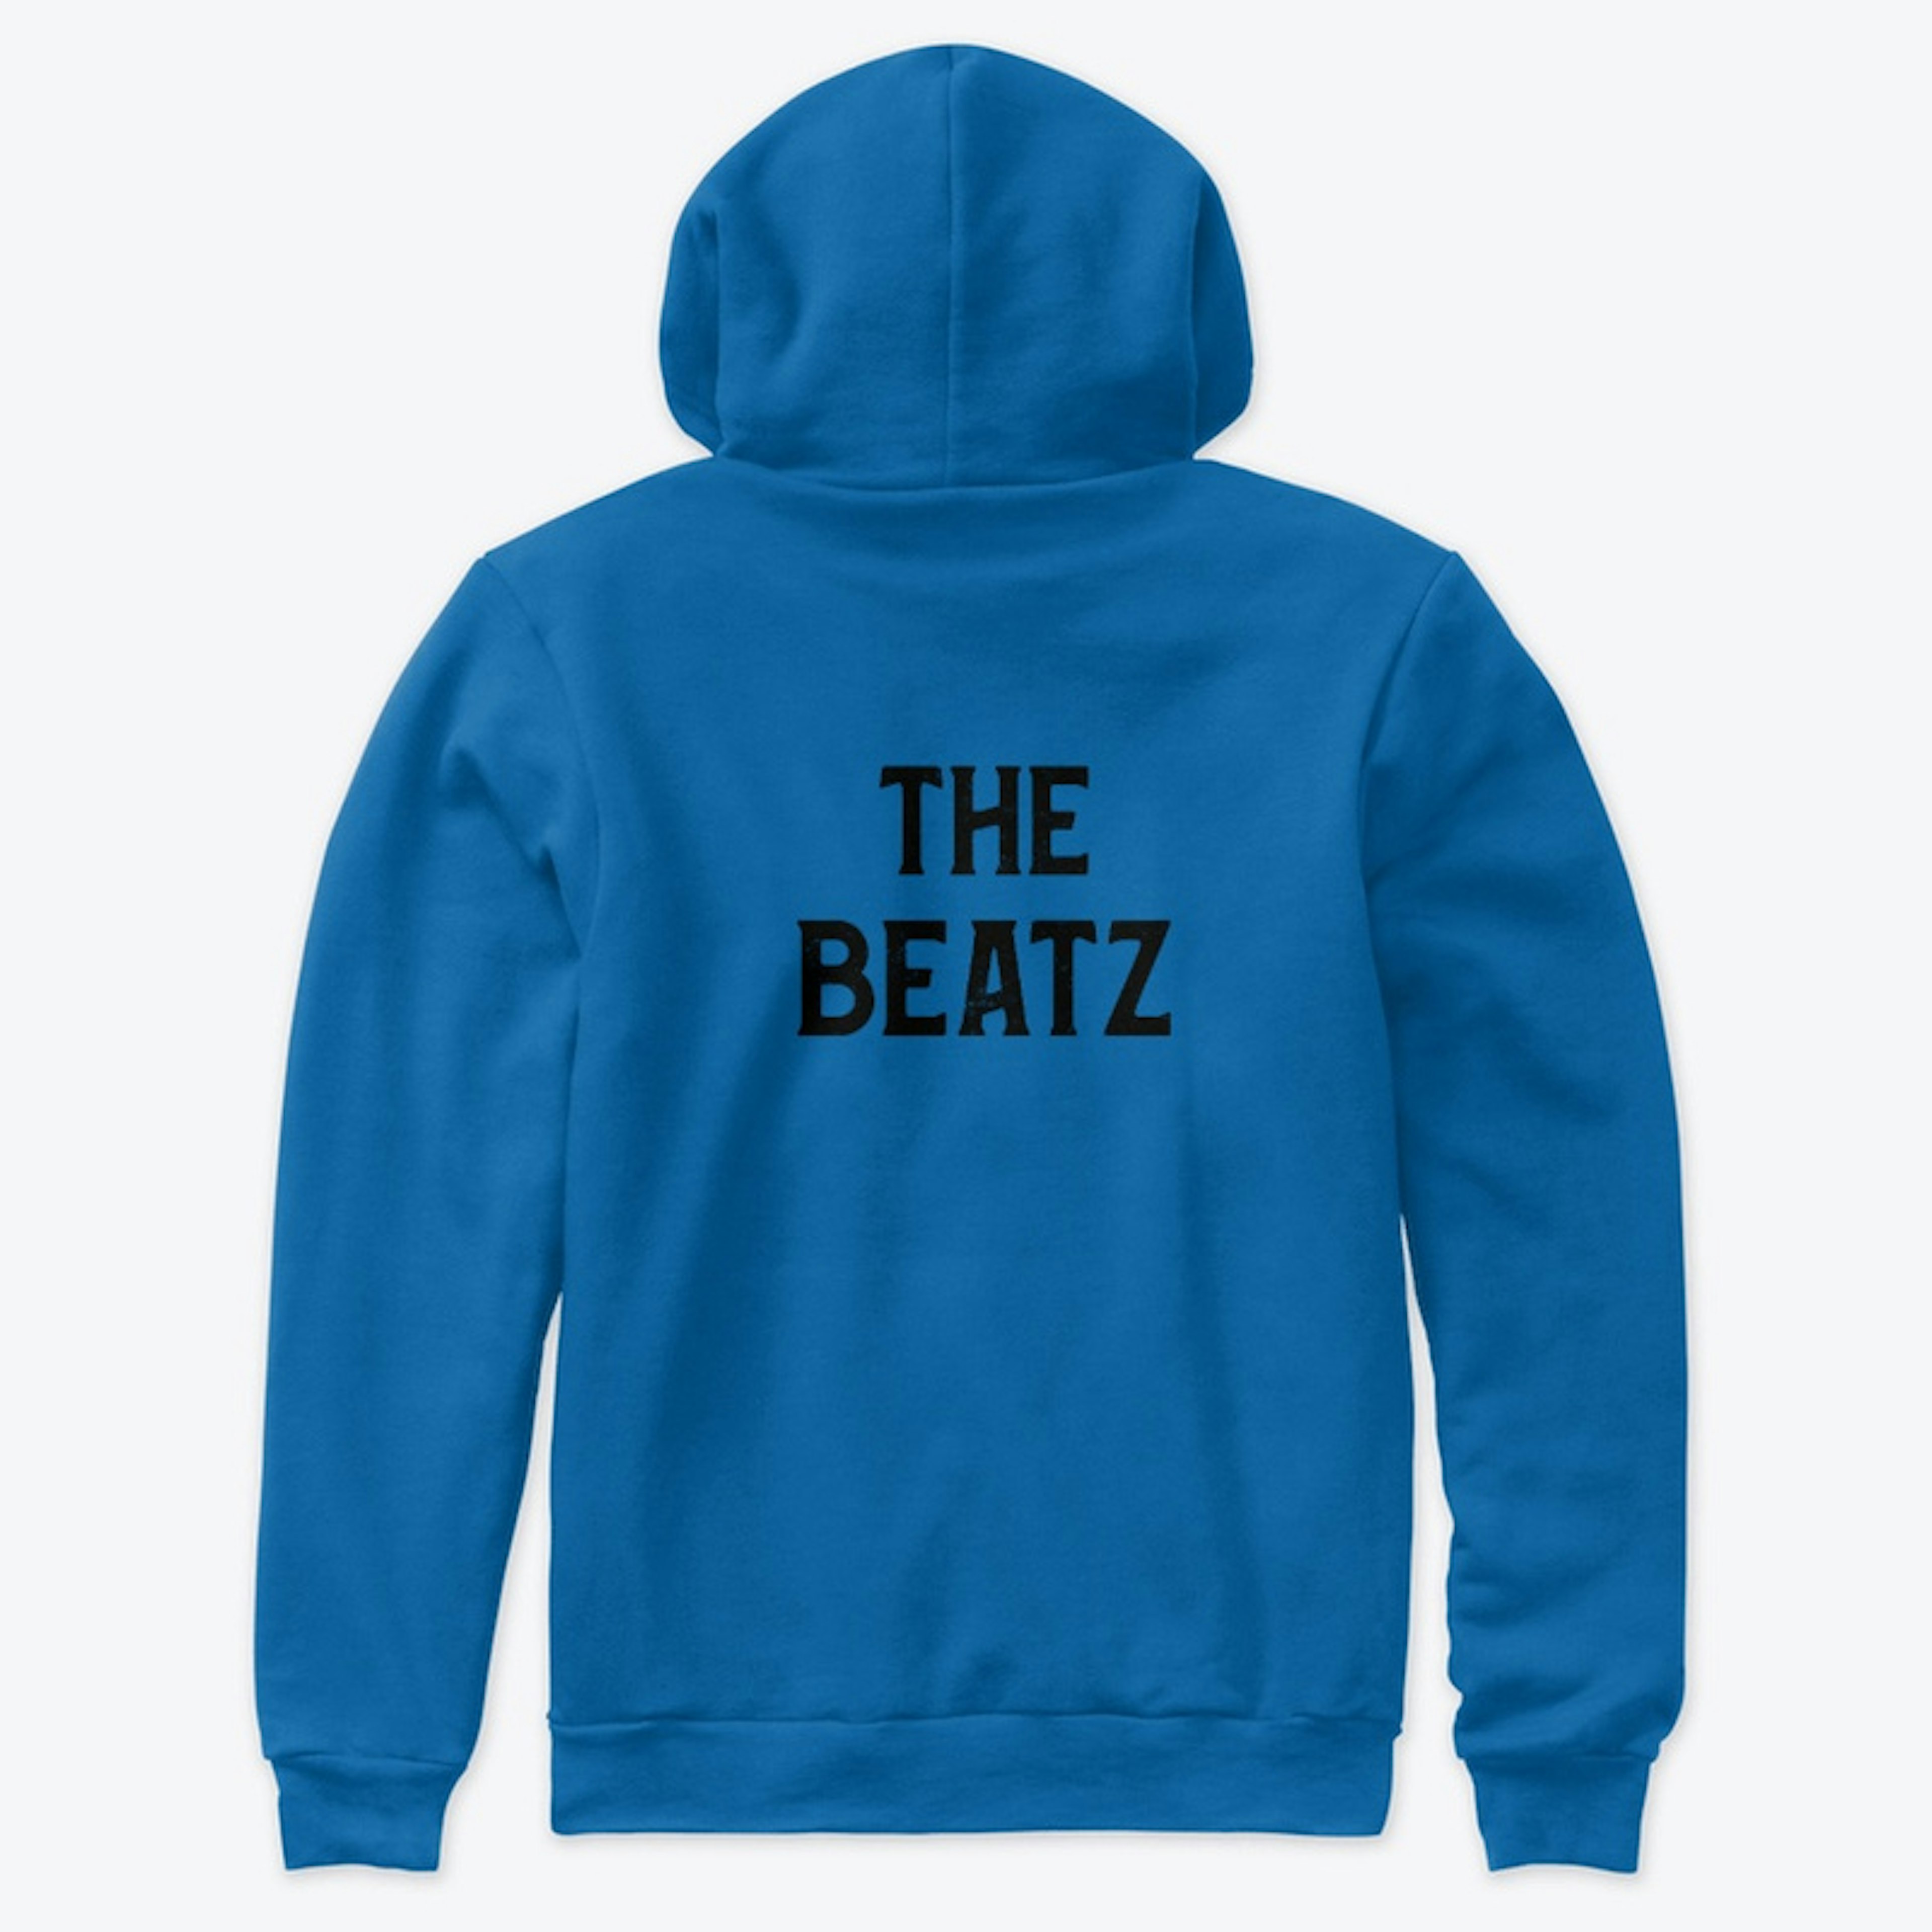 The Beatz